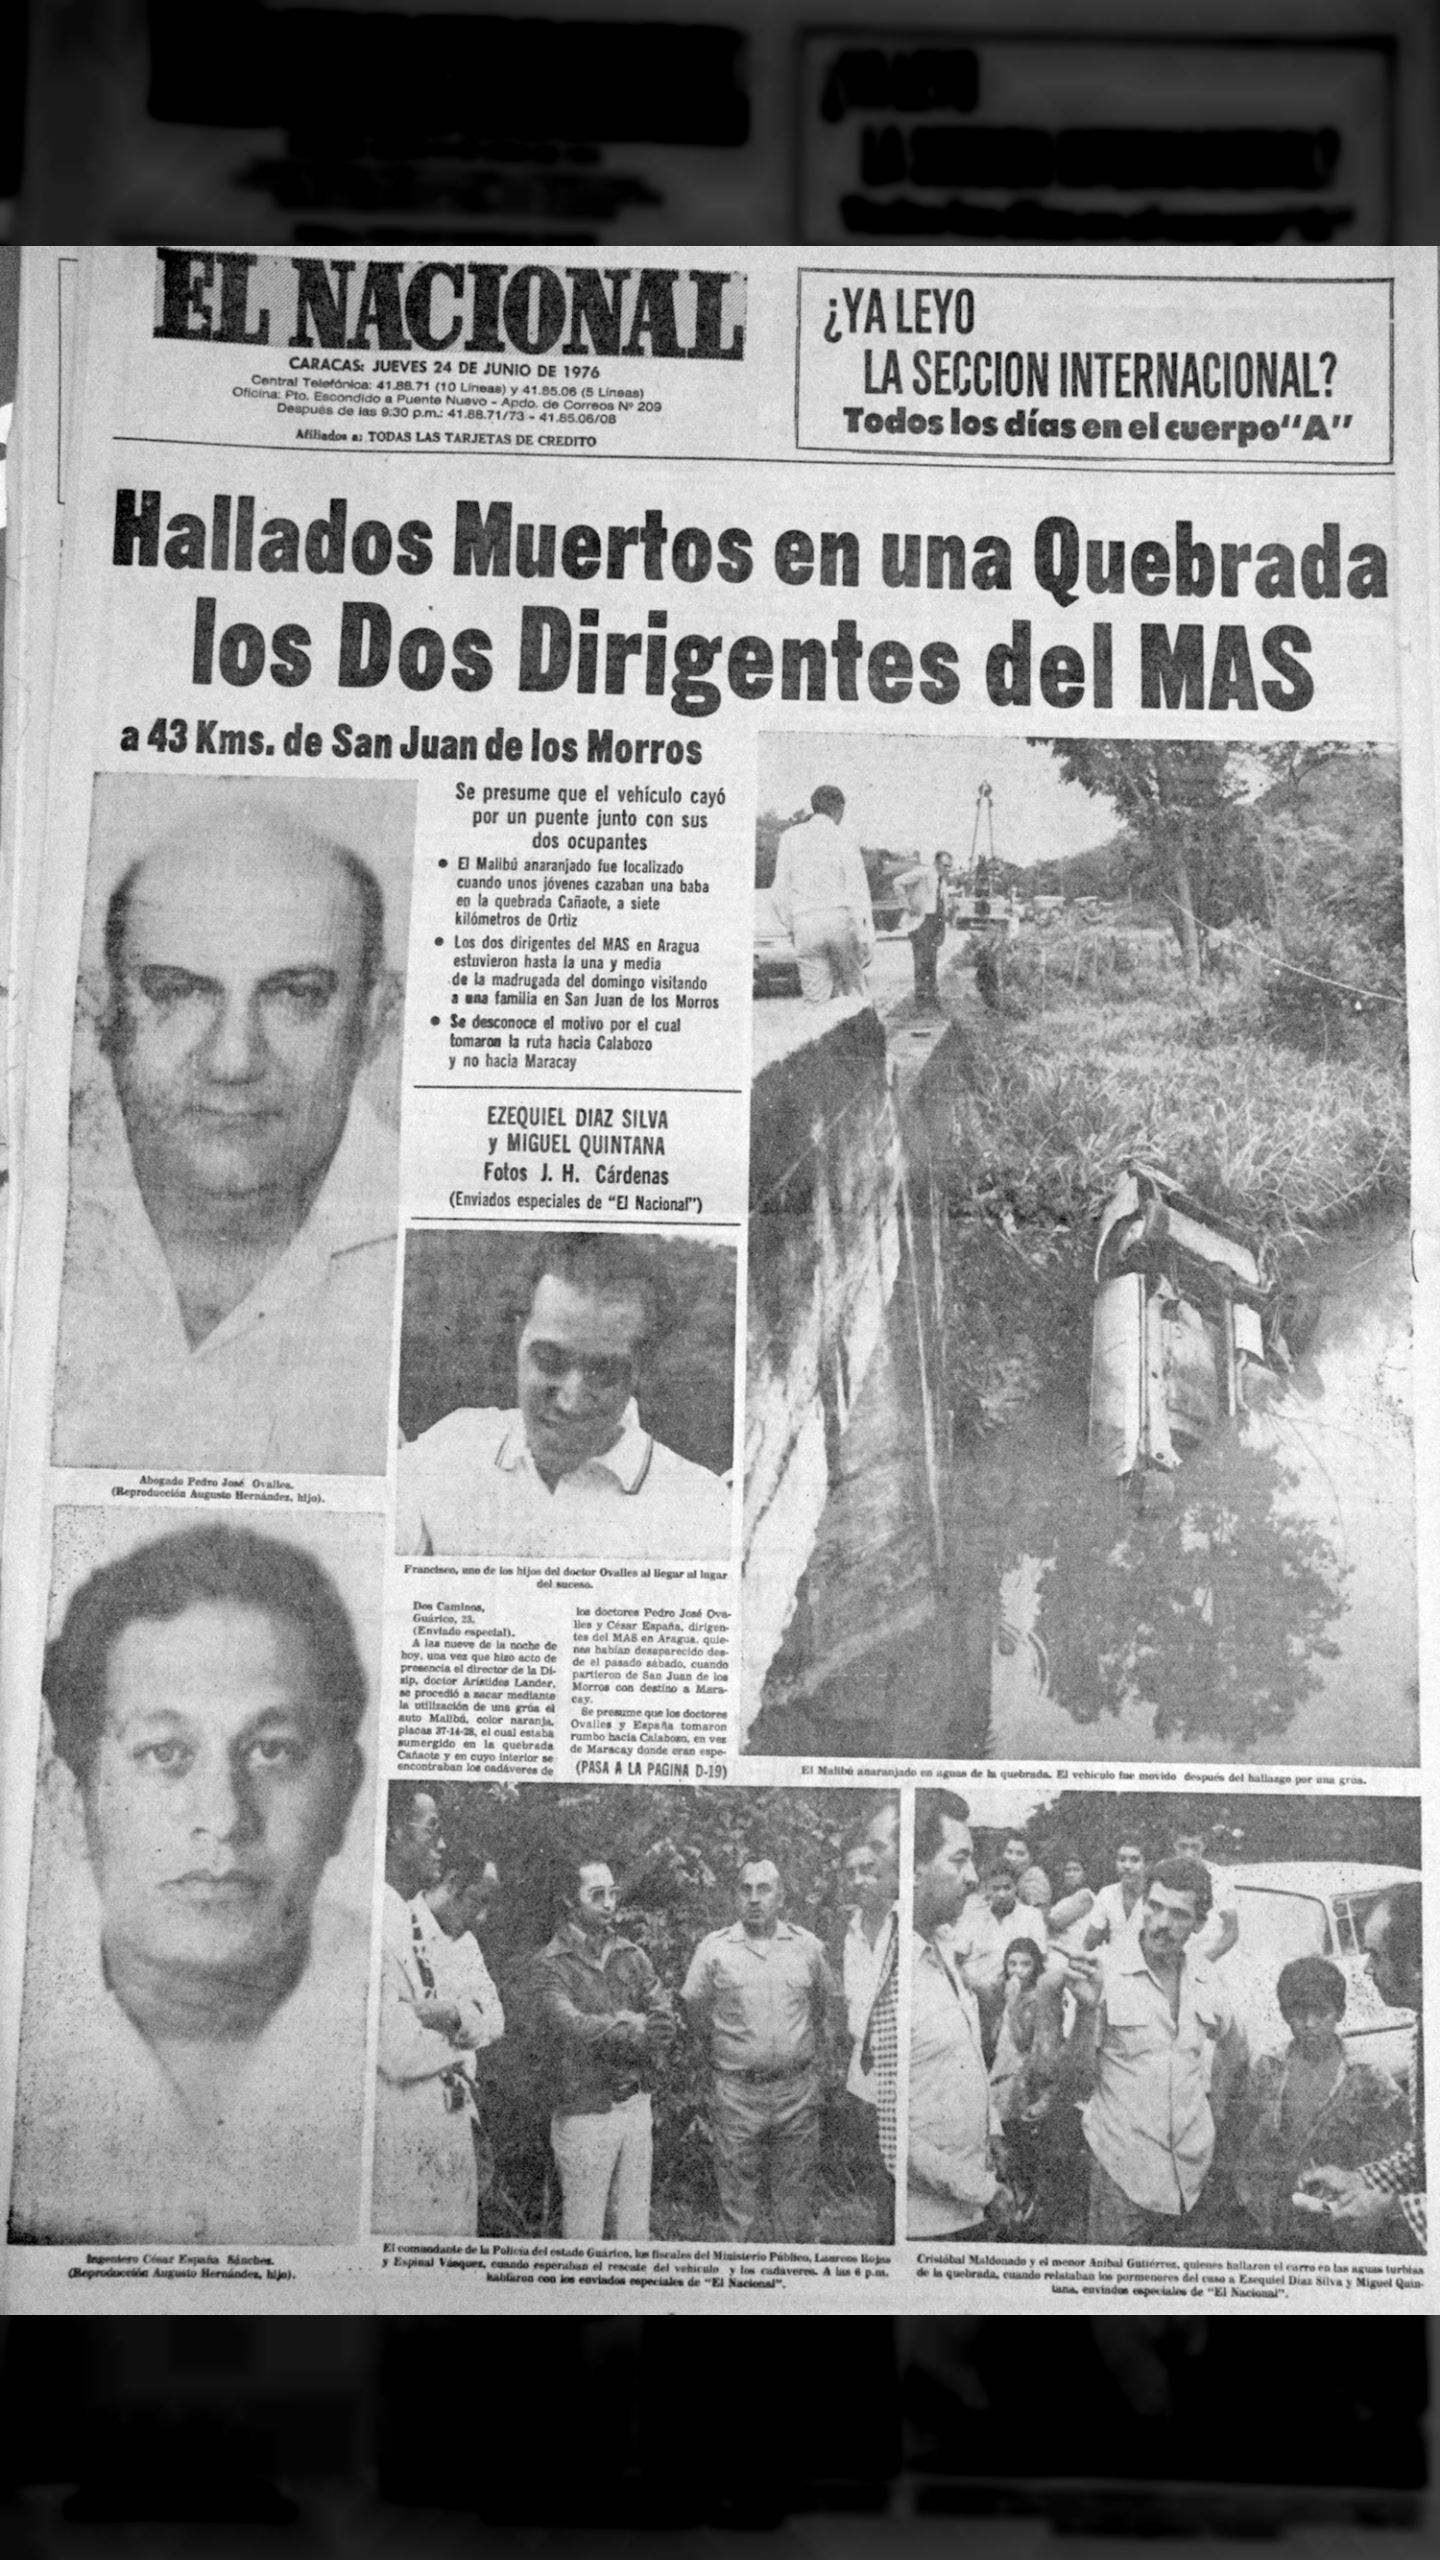 Hallados muertos en una quebrada los dos dirigentes del MAS (El Nacional, 24 de junio 1976)